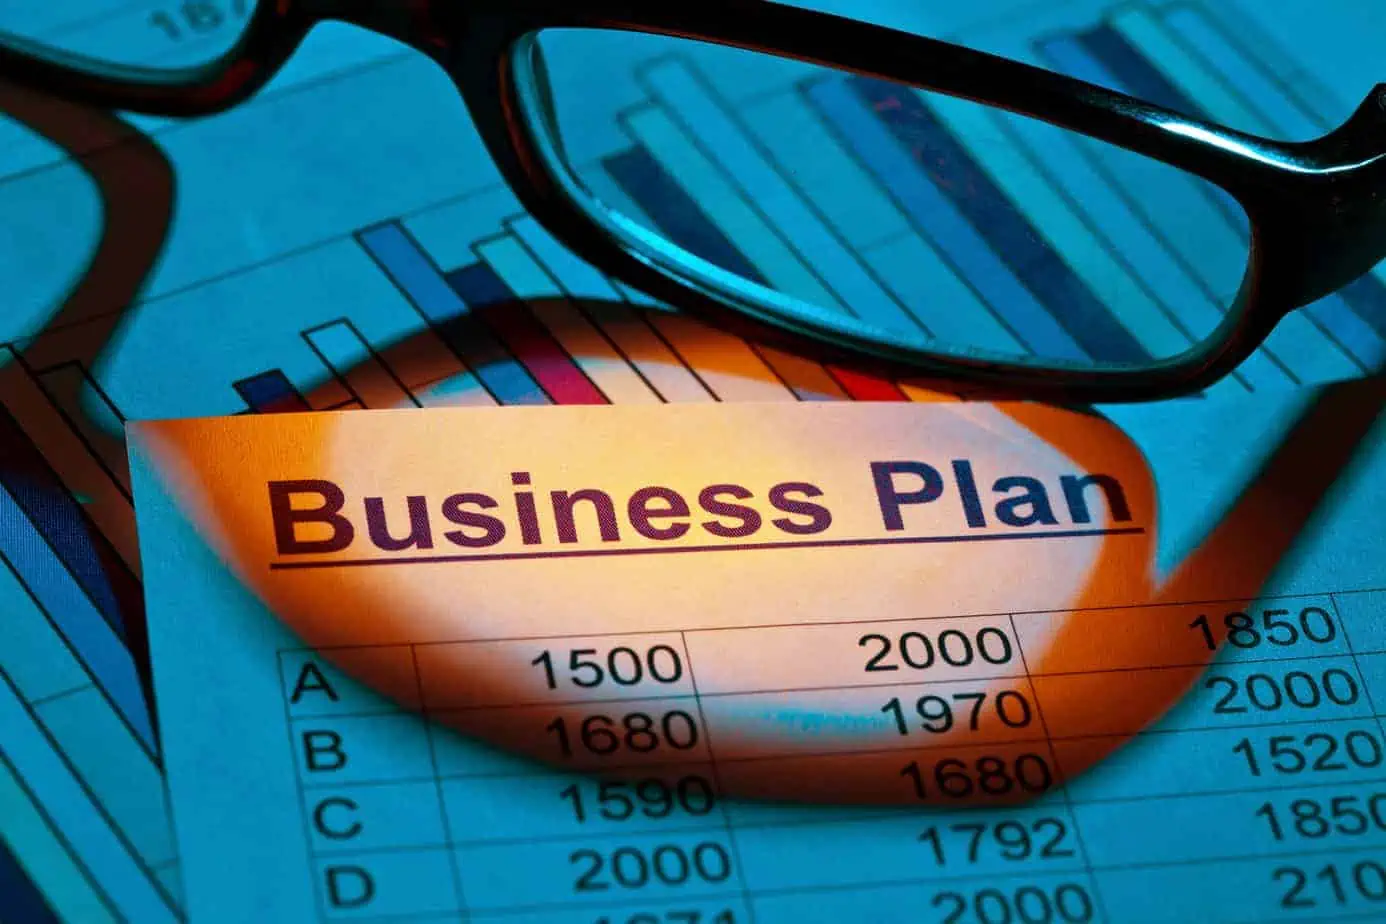 Business Plan Of A Permanent Establishment 23035345